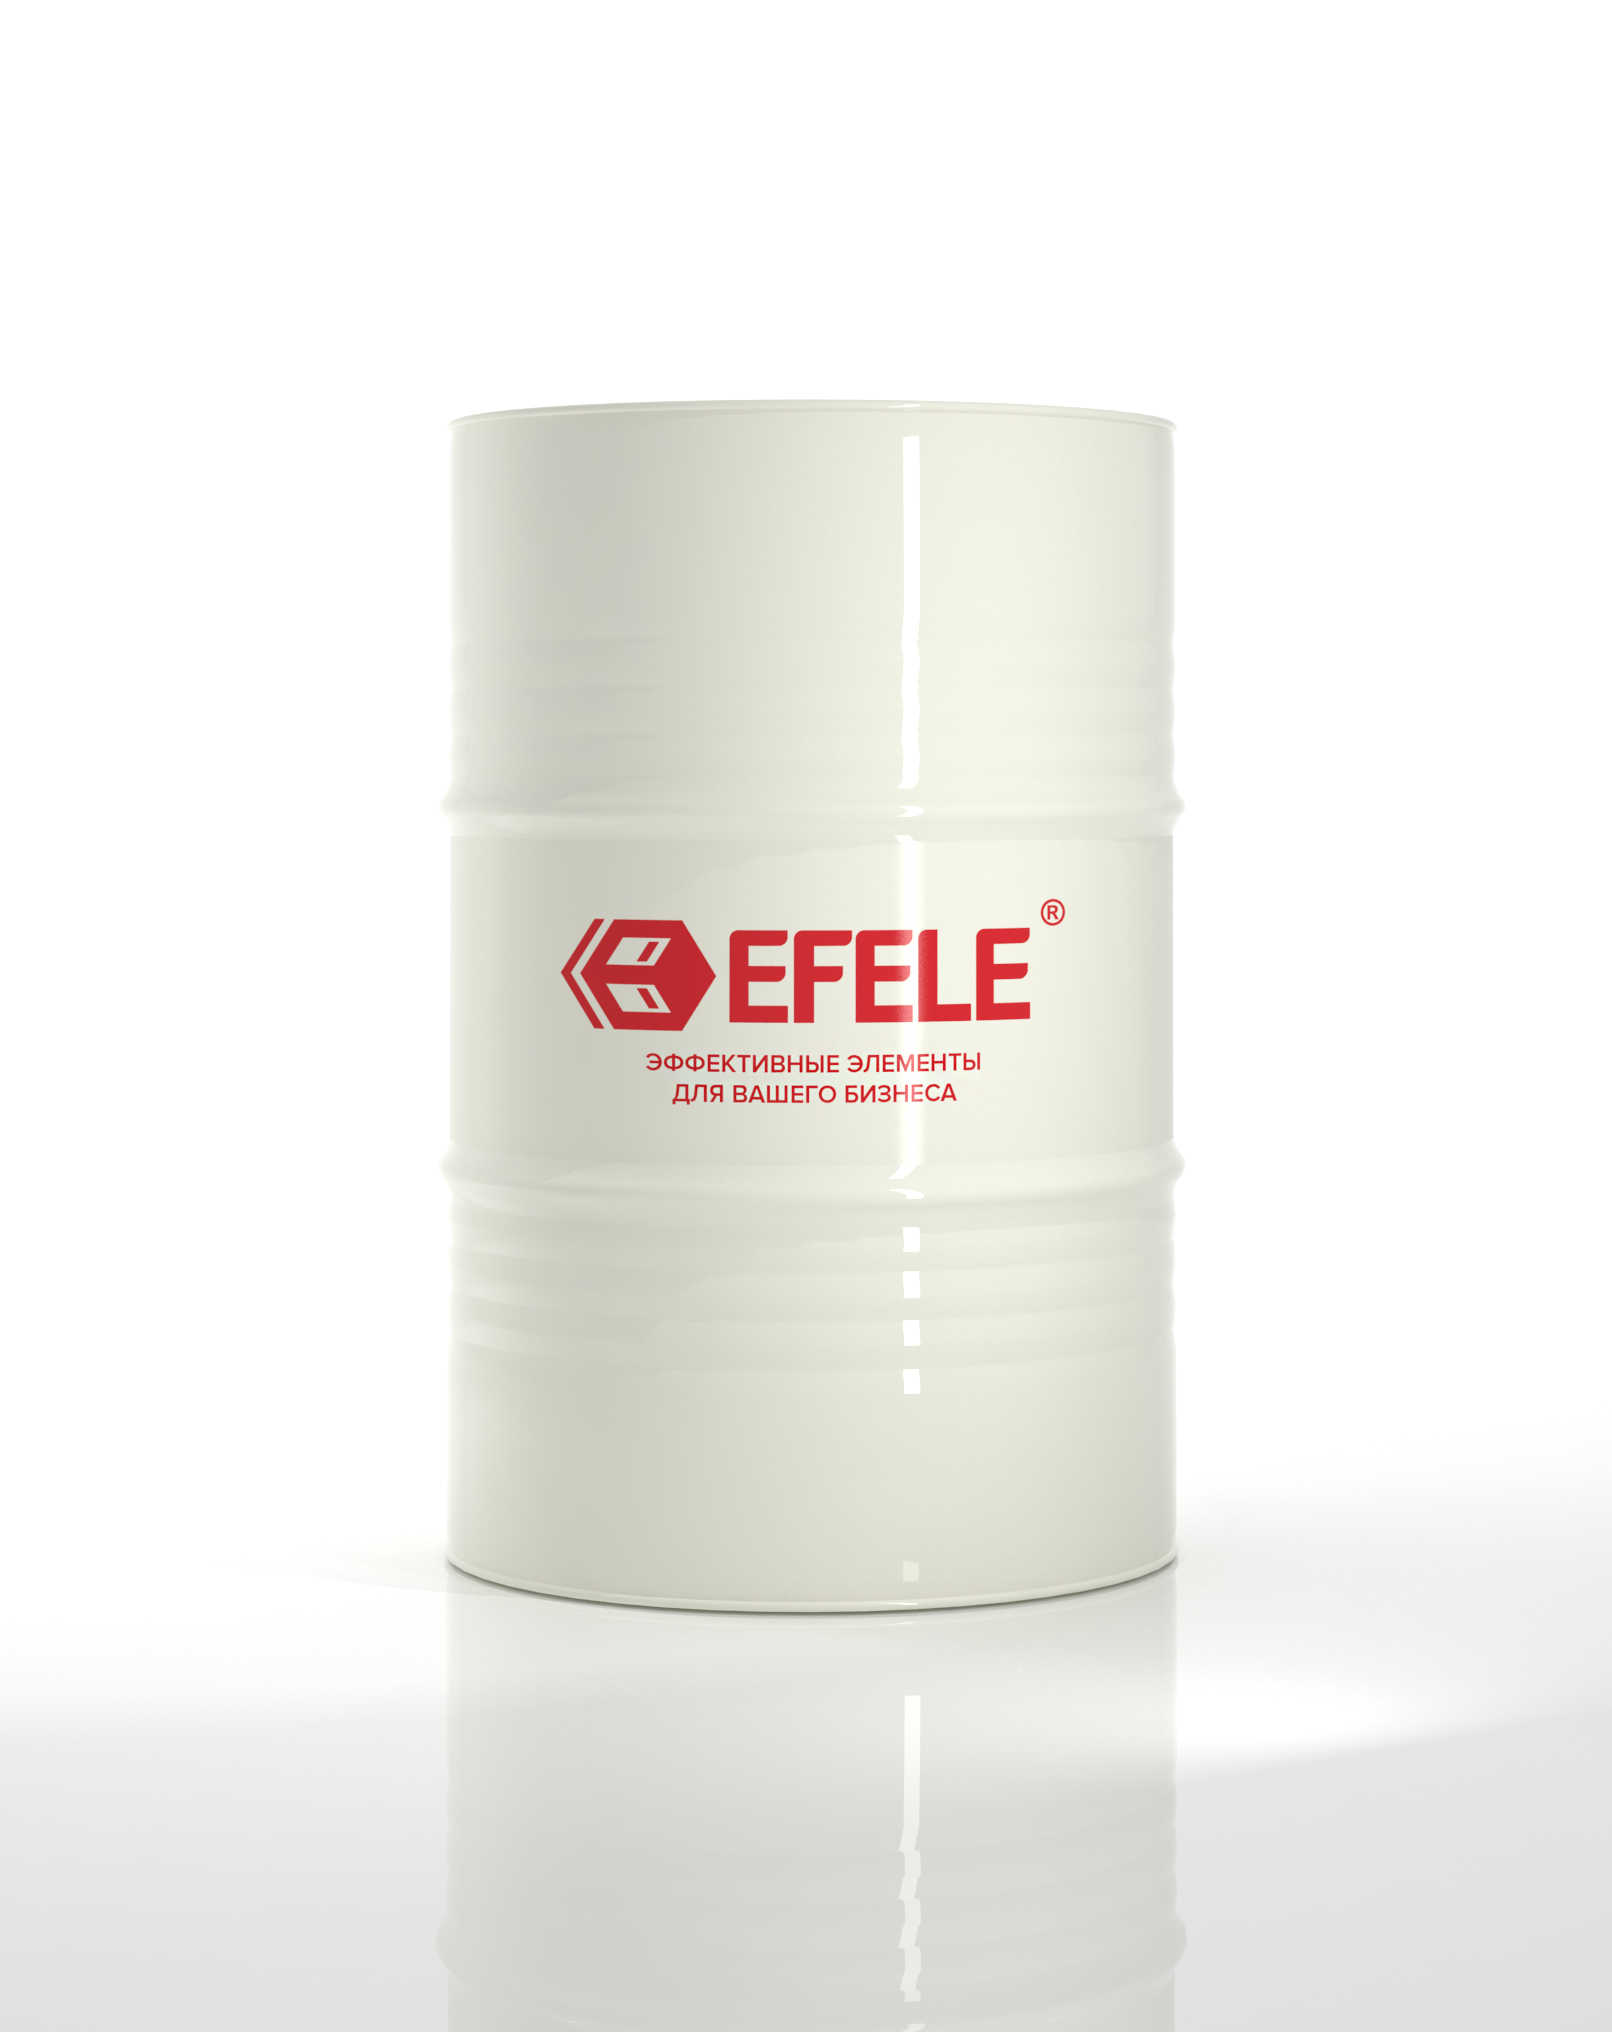 Полусинтетическая СОЖ для металлообработки Efele CF-622 (180 кг)